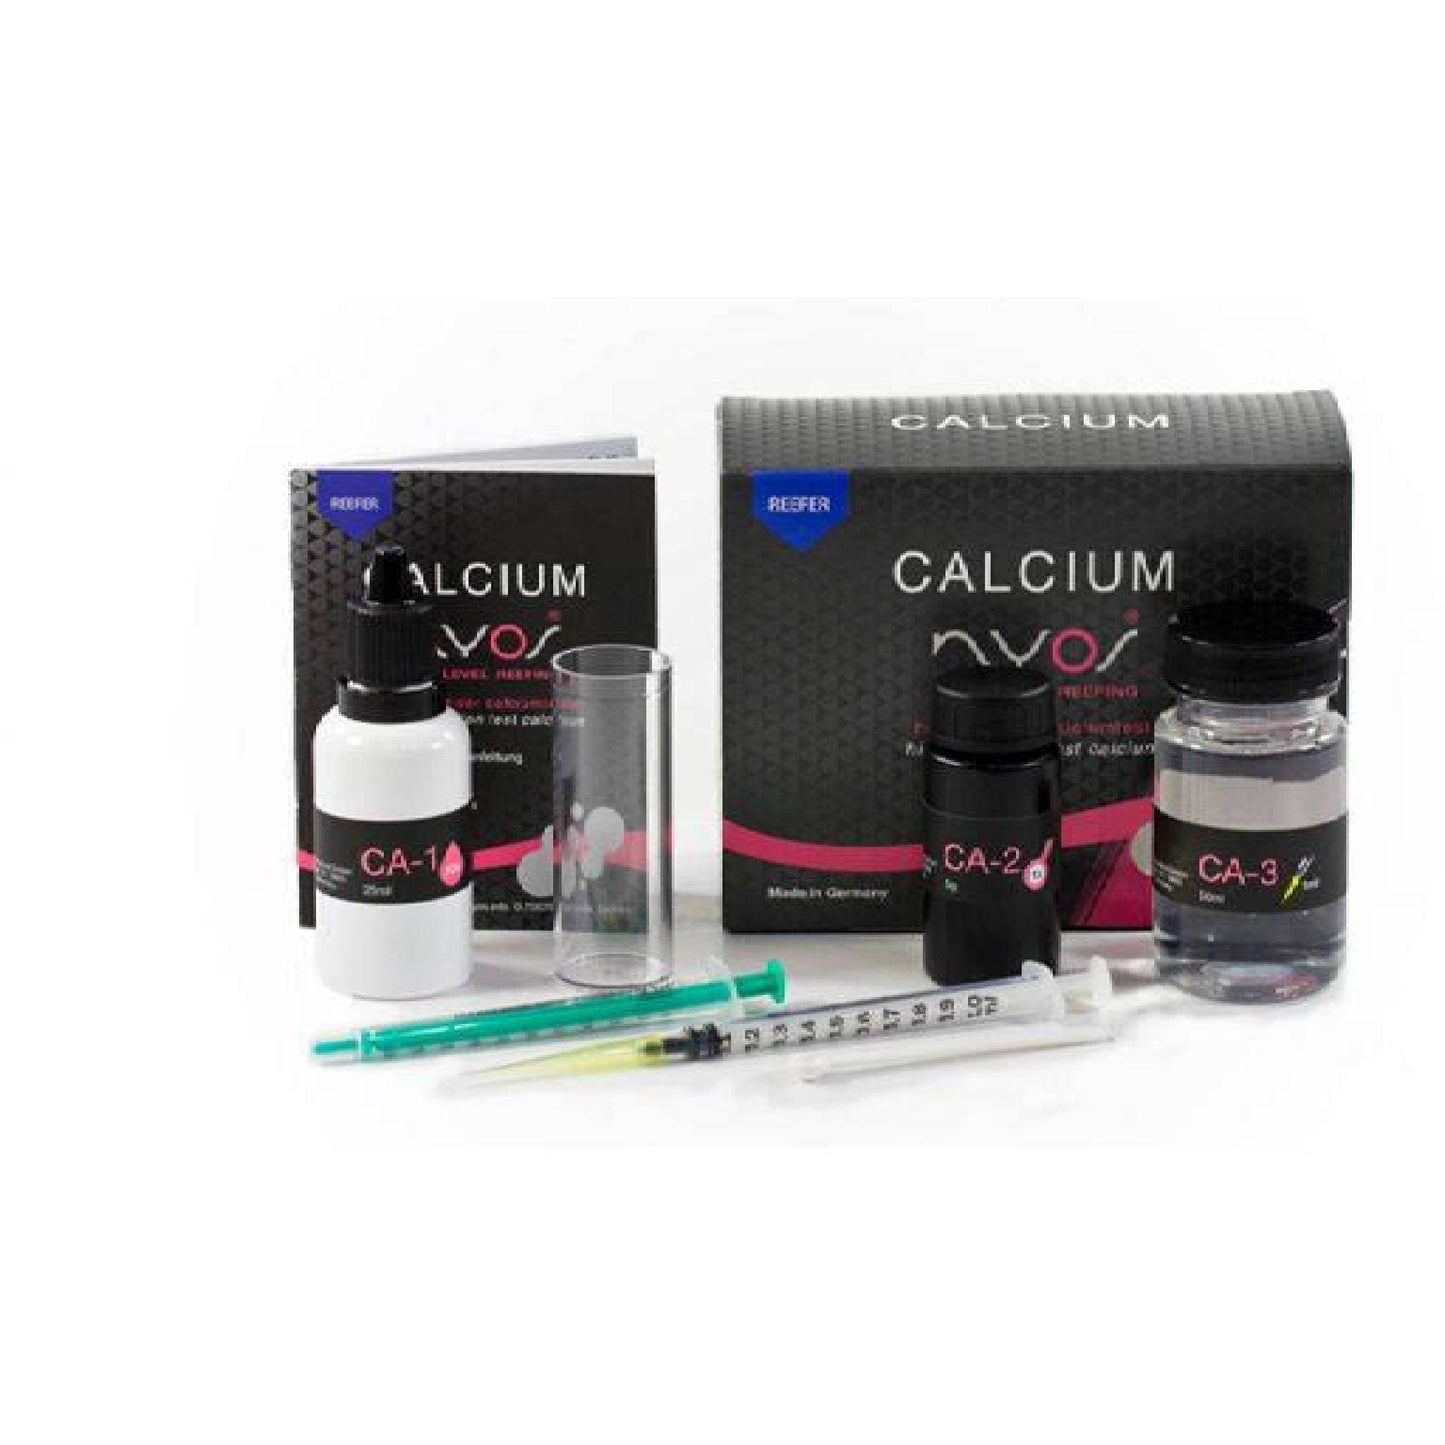 Calcium Reefer Test Kit - Nyos